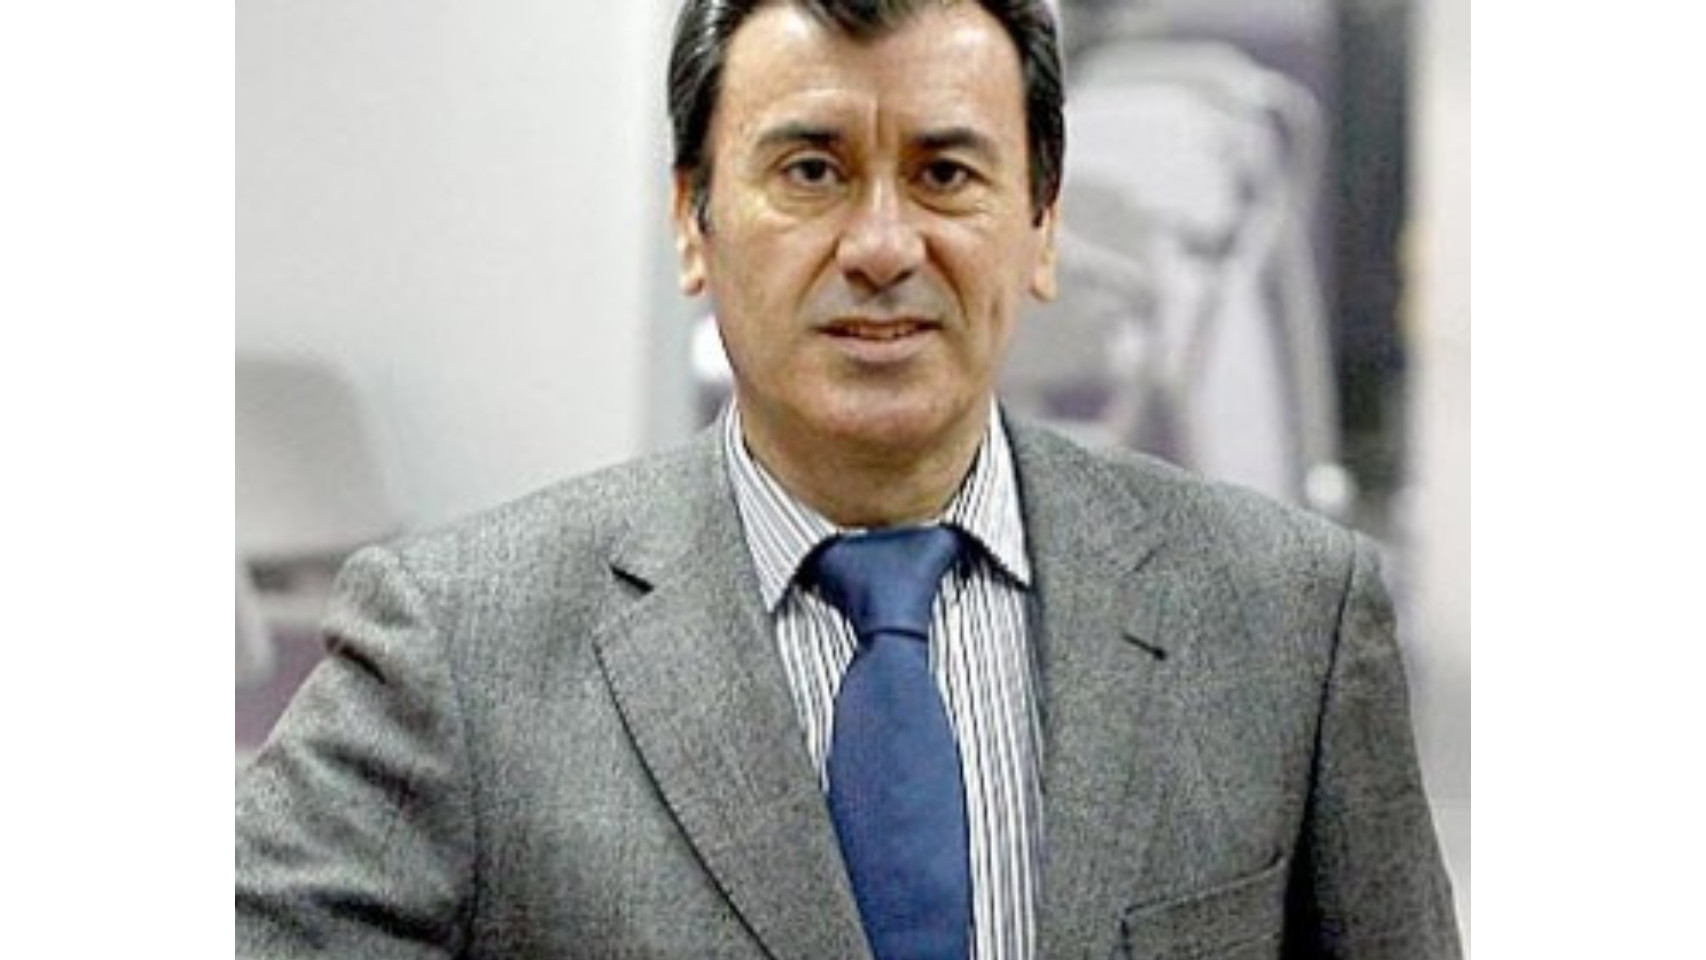 Francisco Arteaga